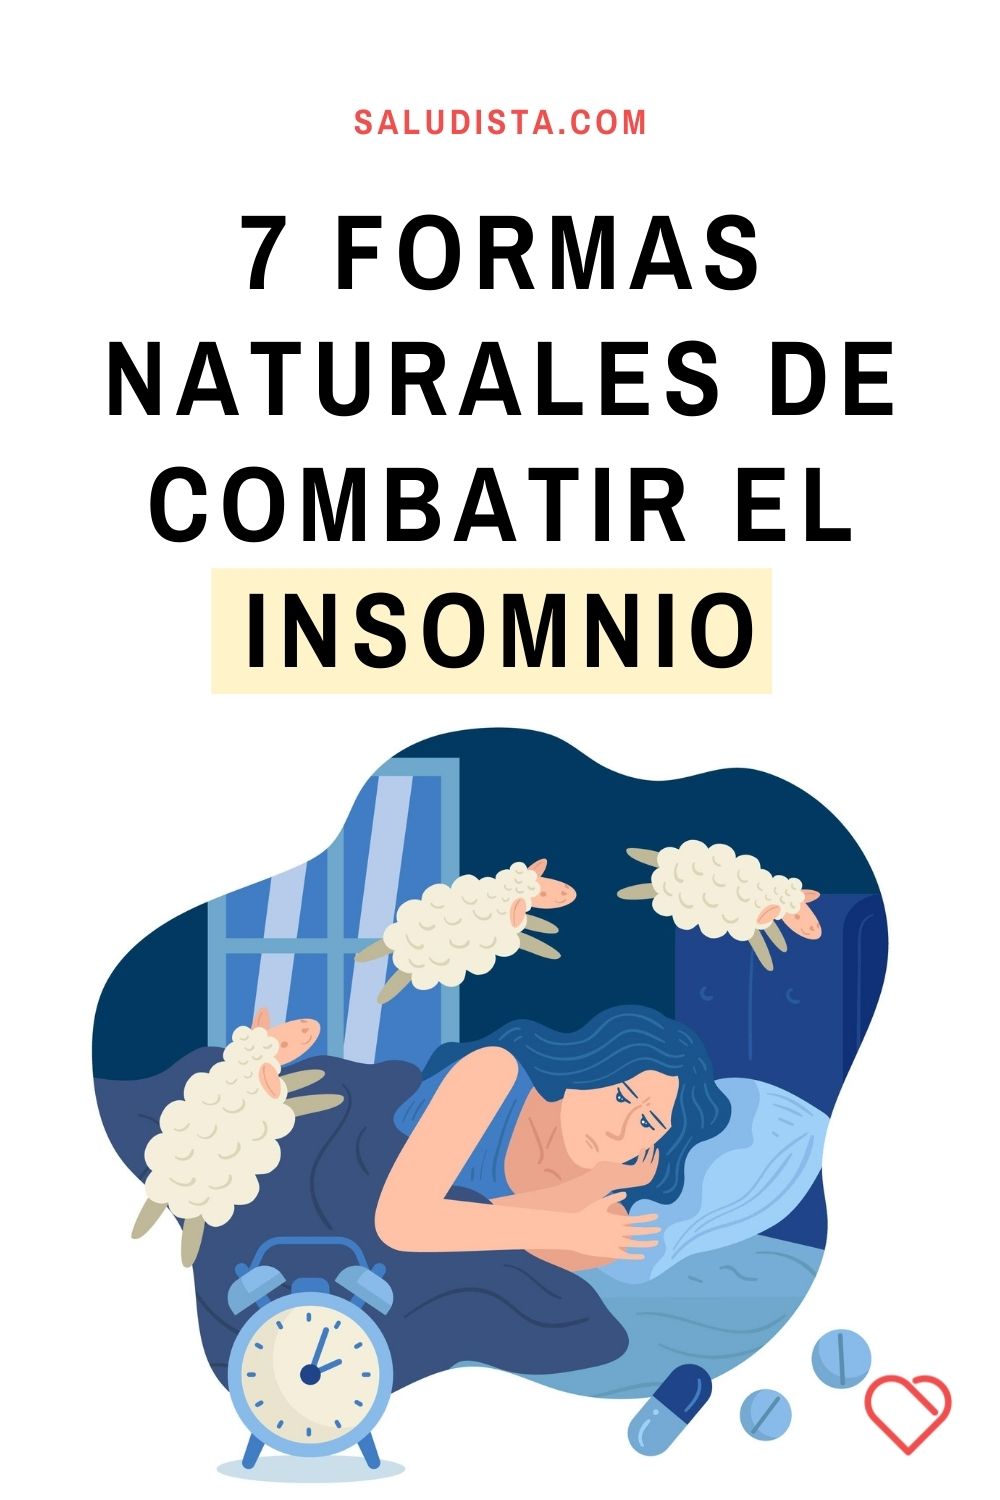 7 formas naturales de combatir el insomnio